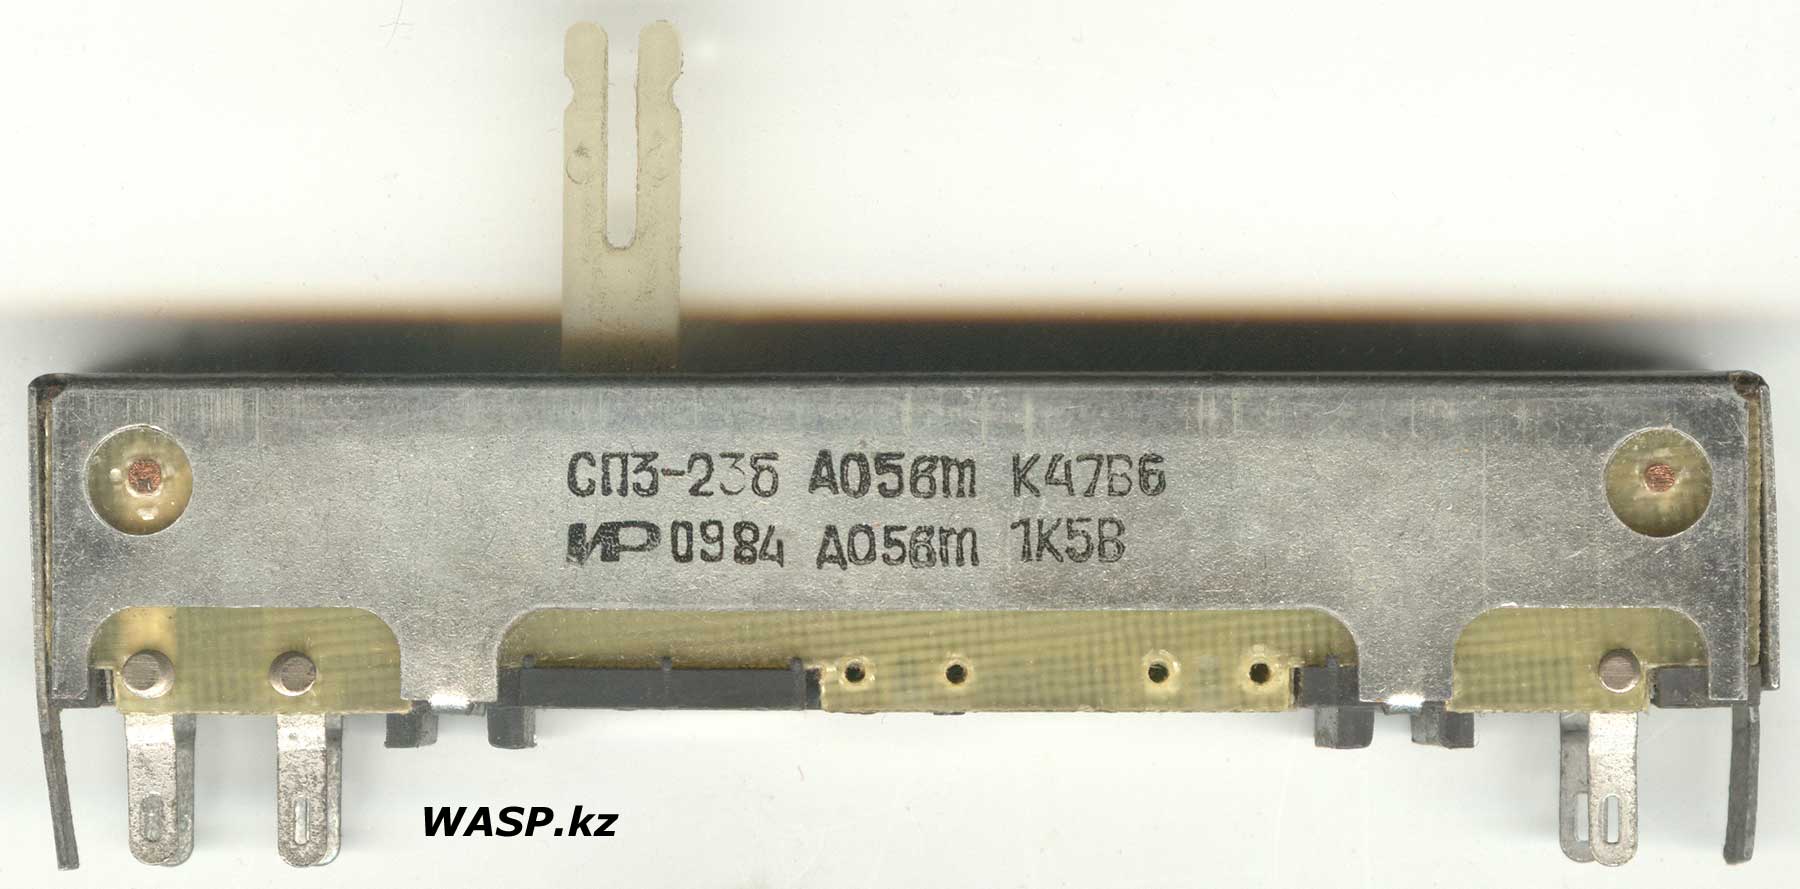 движковый переменный резистор СП3-23б завод Радиан, Иркутск, логотип